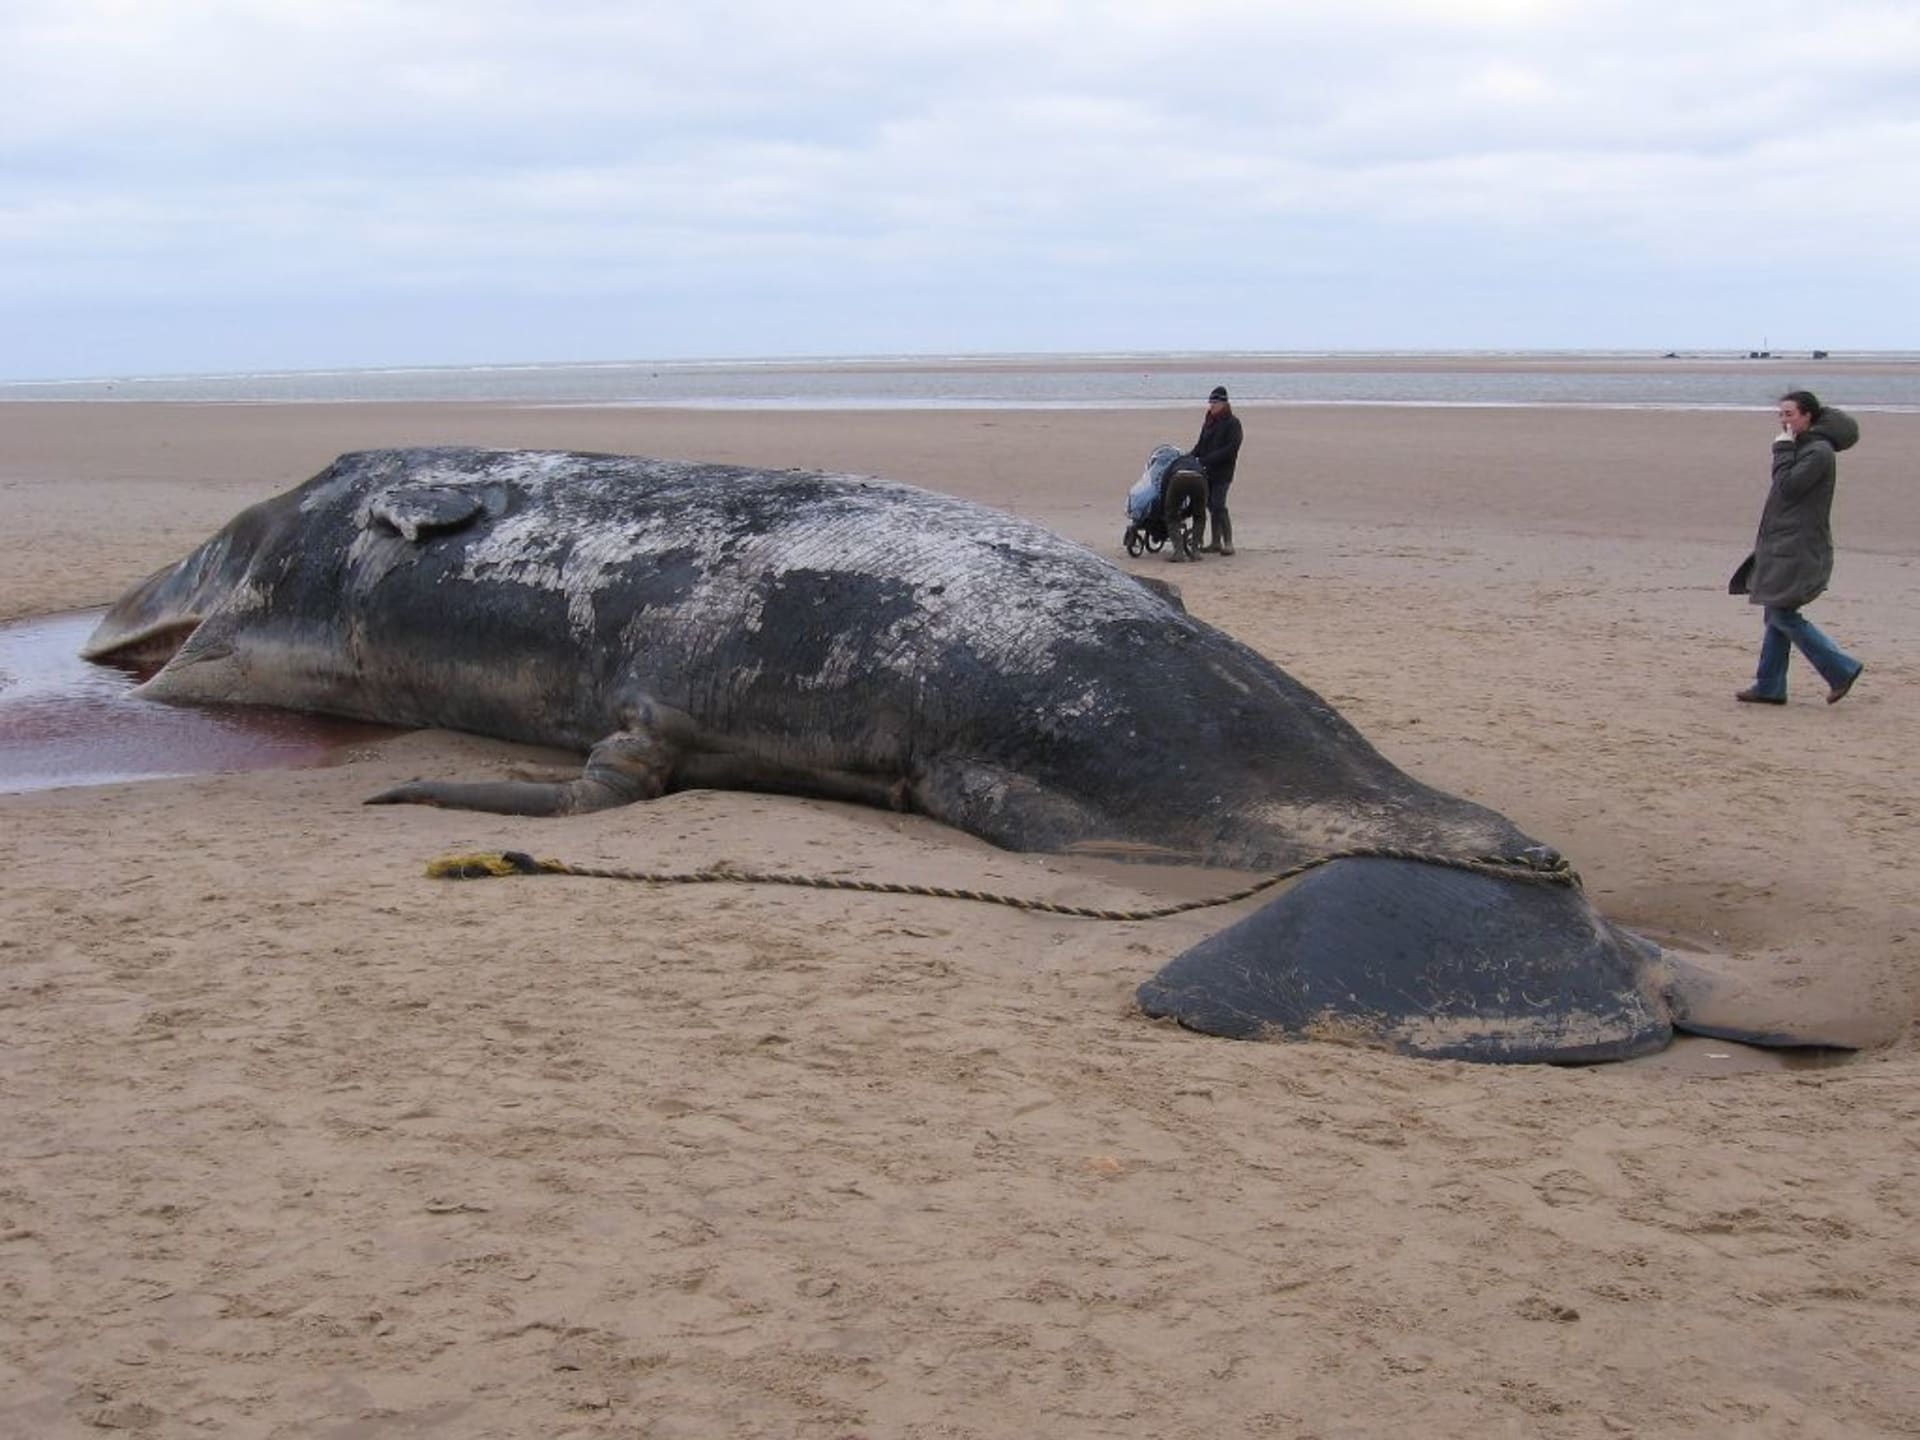 Uhynulých vyhladovělých velryb kvůli útrobám plných plastu je stále víc.